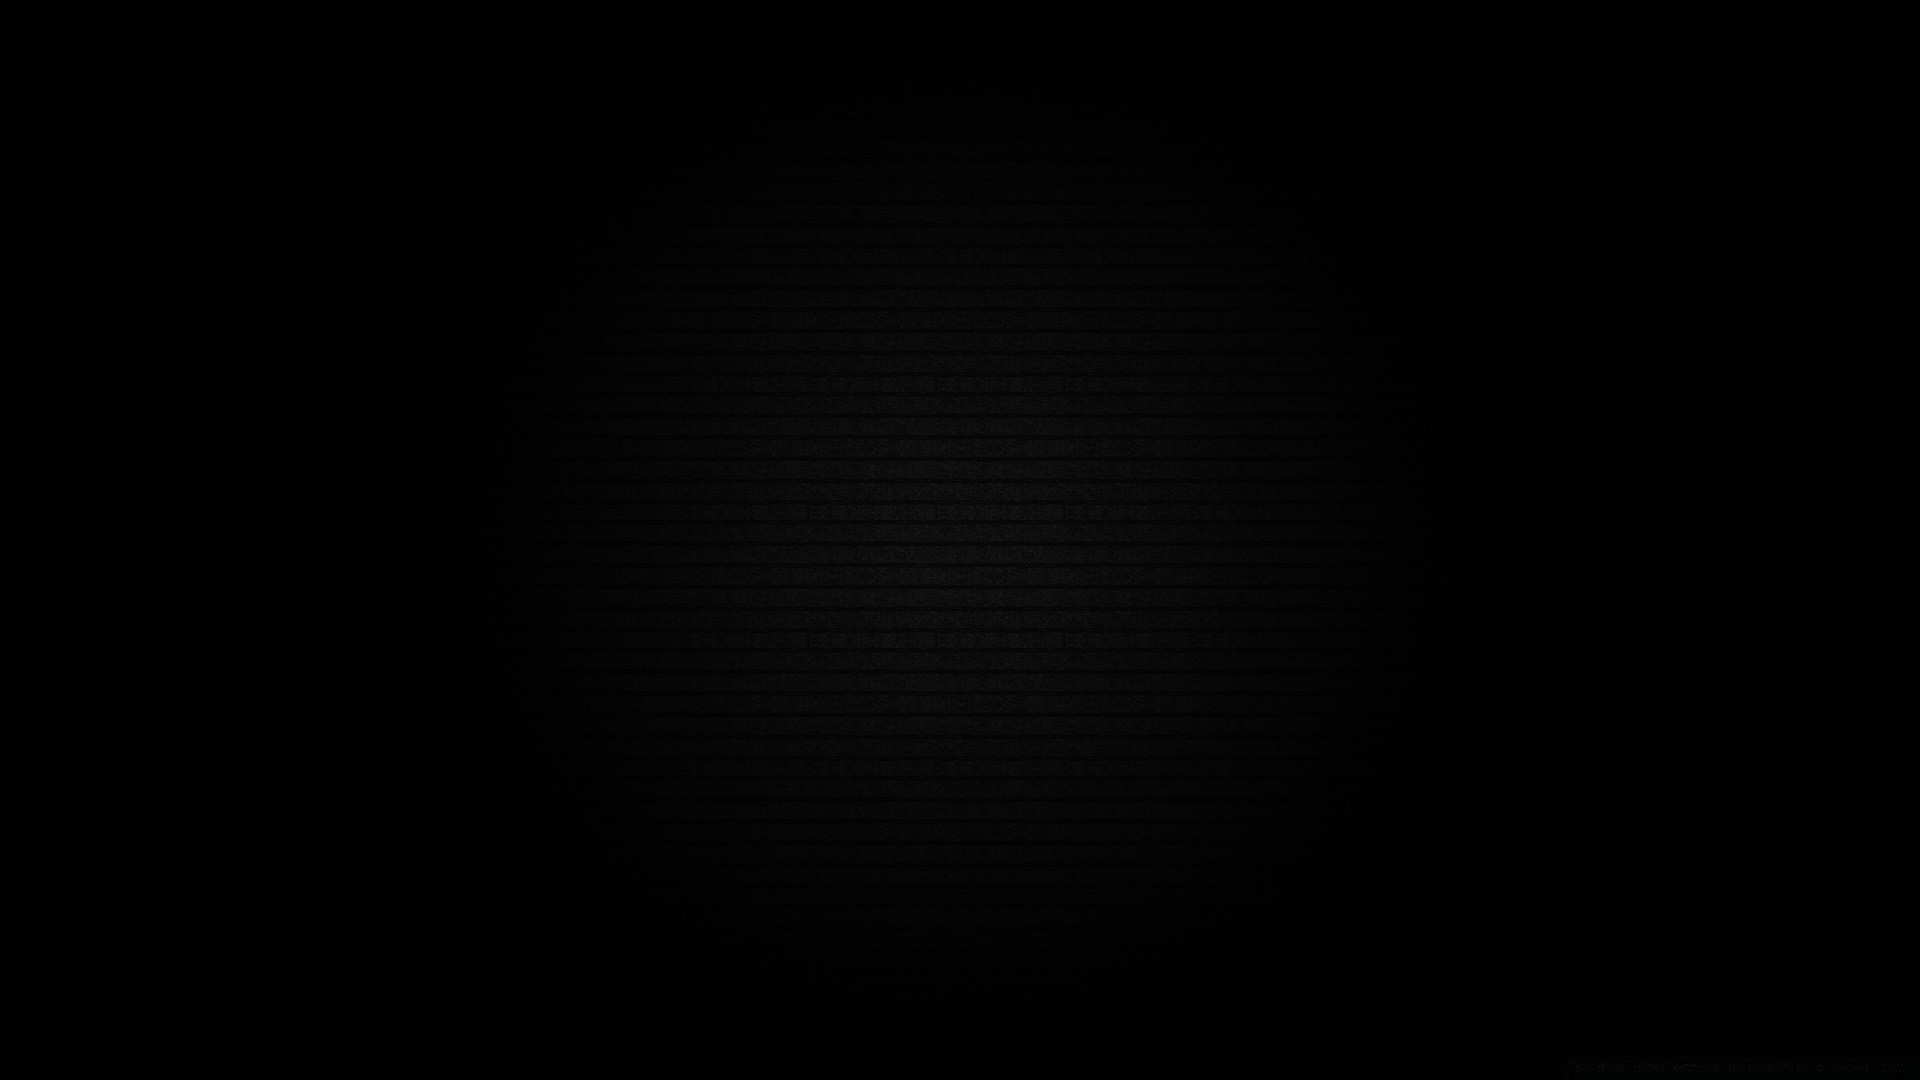 черное аннотация шаблон искусство рабочего стола портрет луна иллюстрация свет птица фон вектор небо дизайн затмение обои текстура астрономия график темный пейзаж